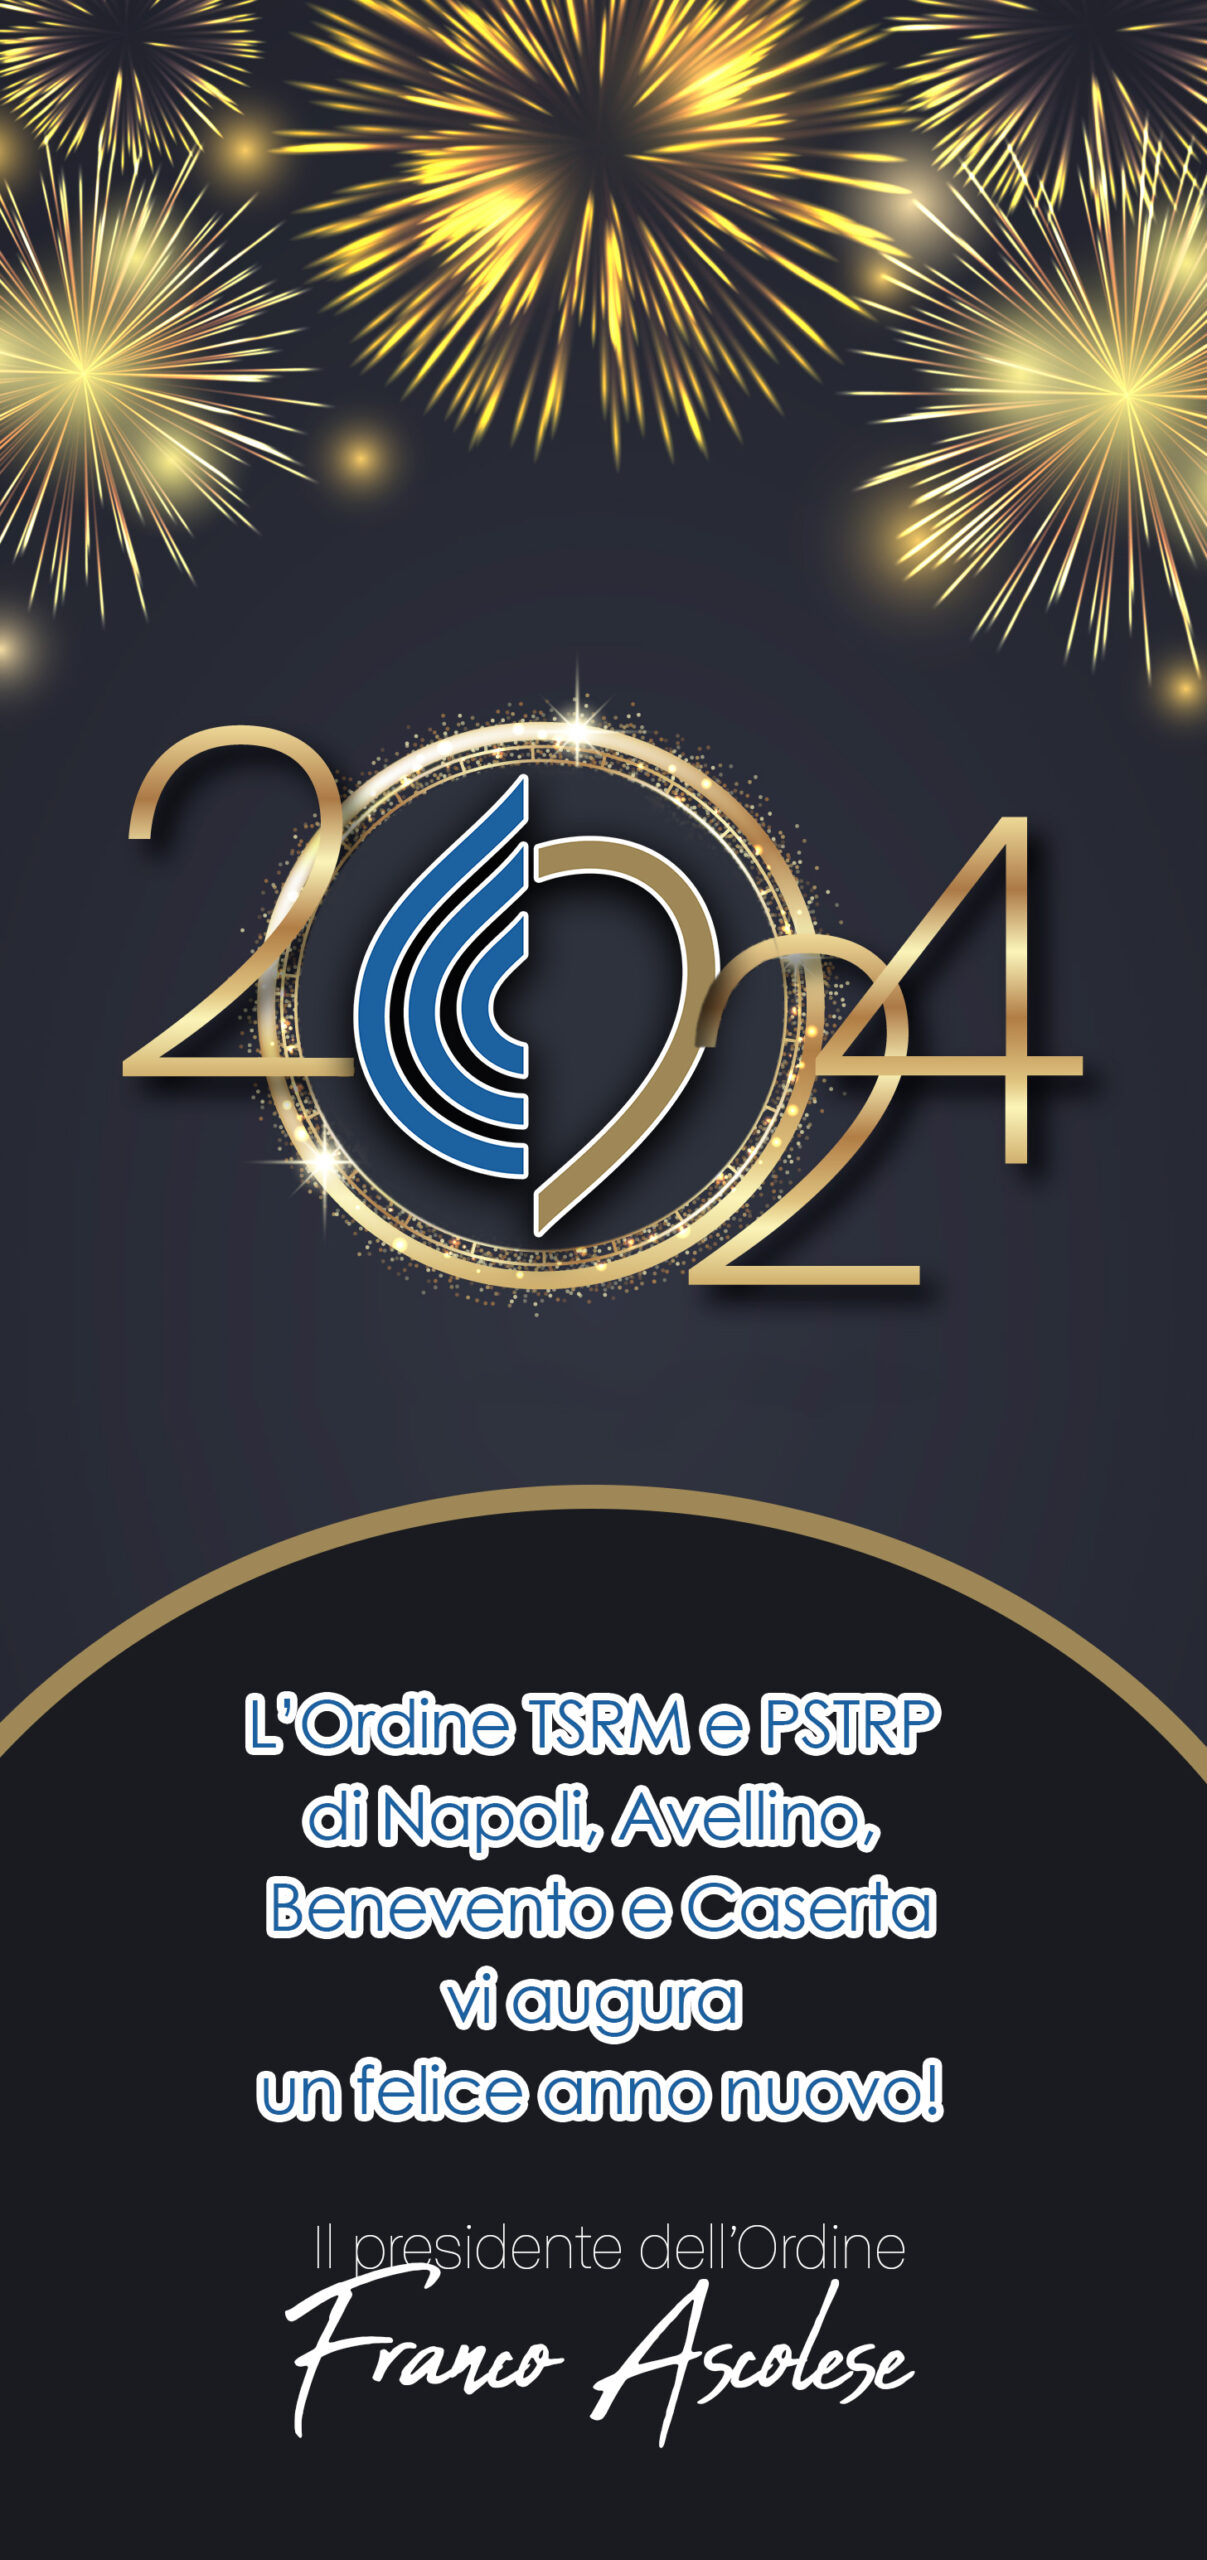 Buon anno dall’Ordine TSRM e PSTRP di Napoli, Avellino, Benevento e Caserta